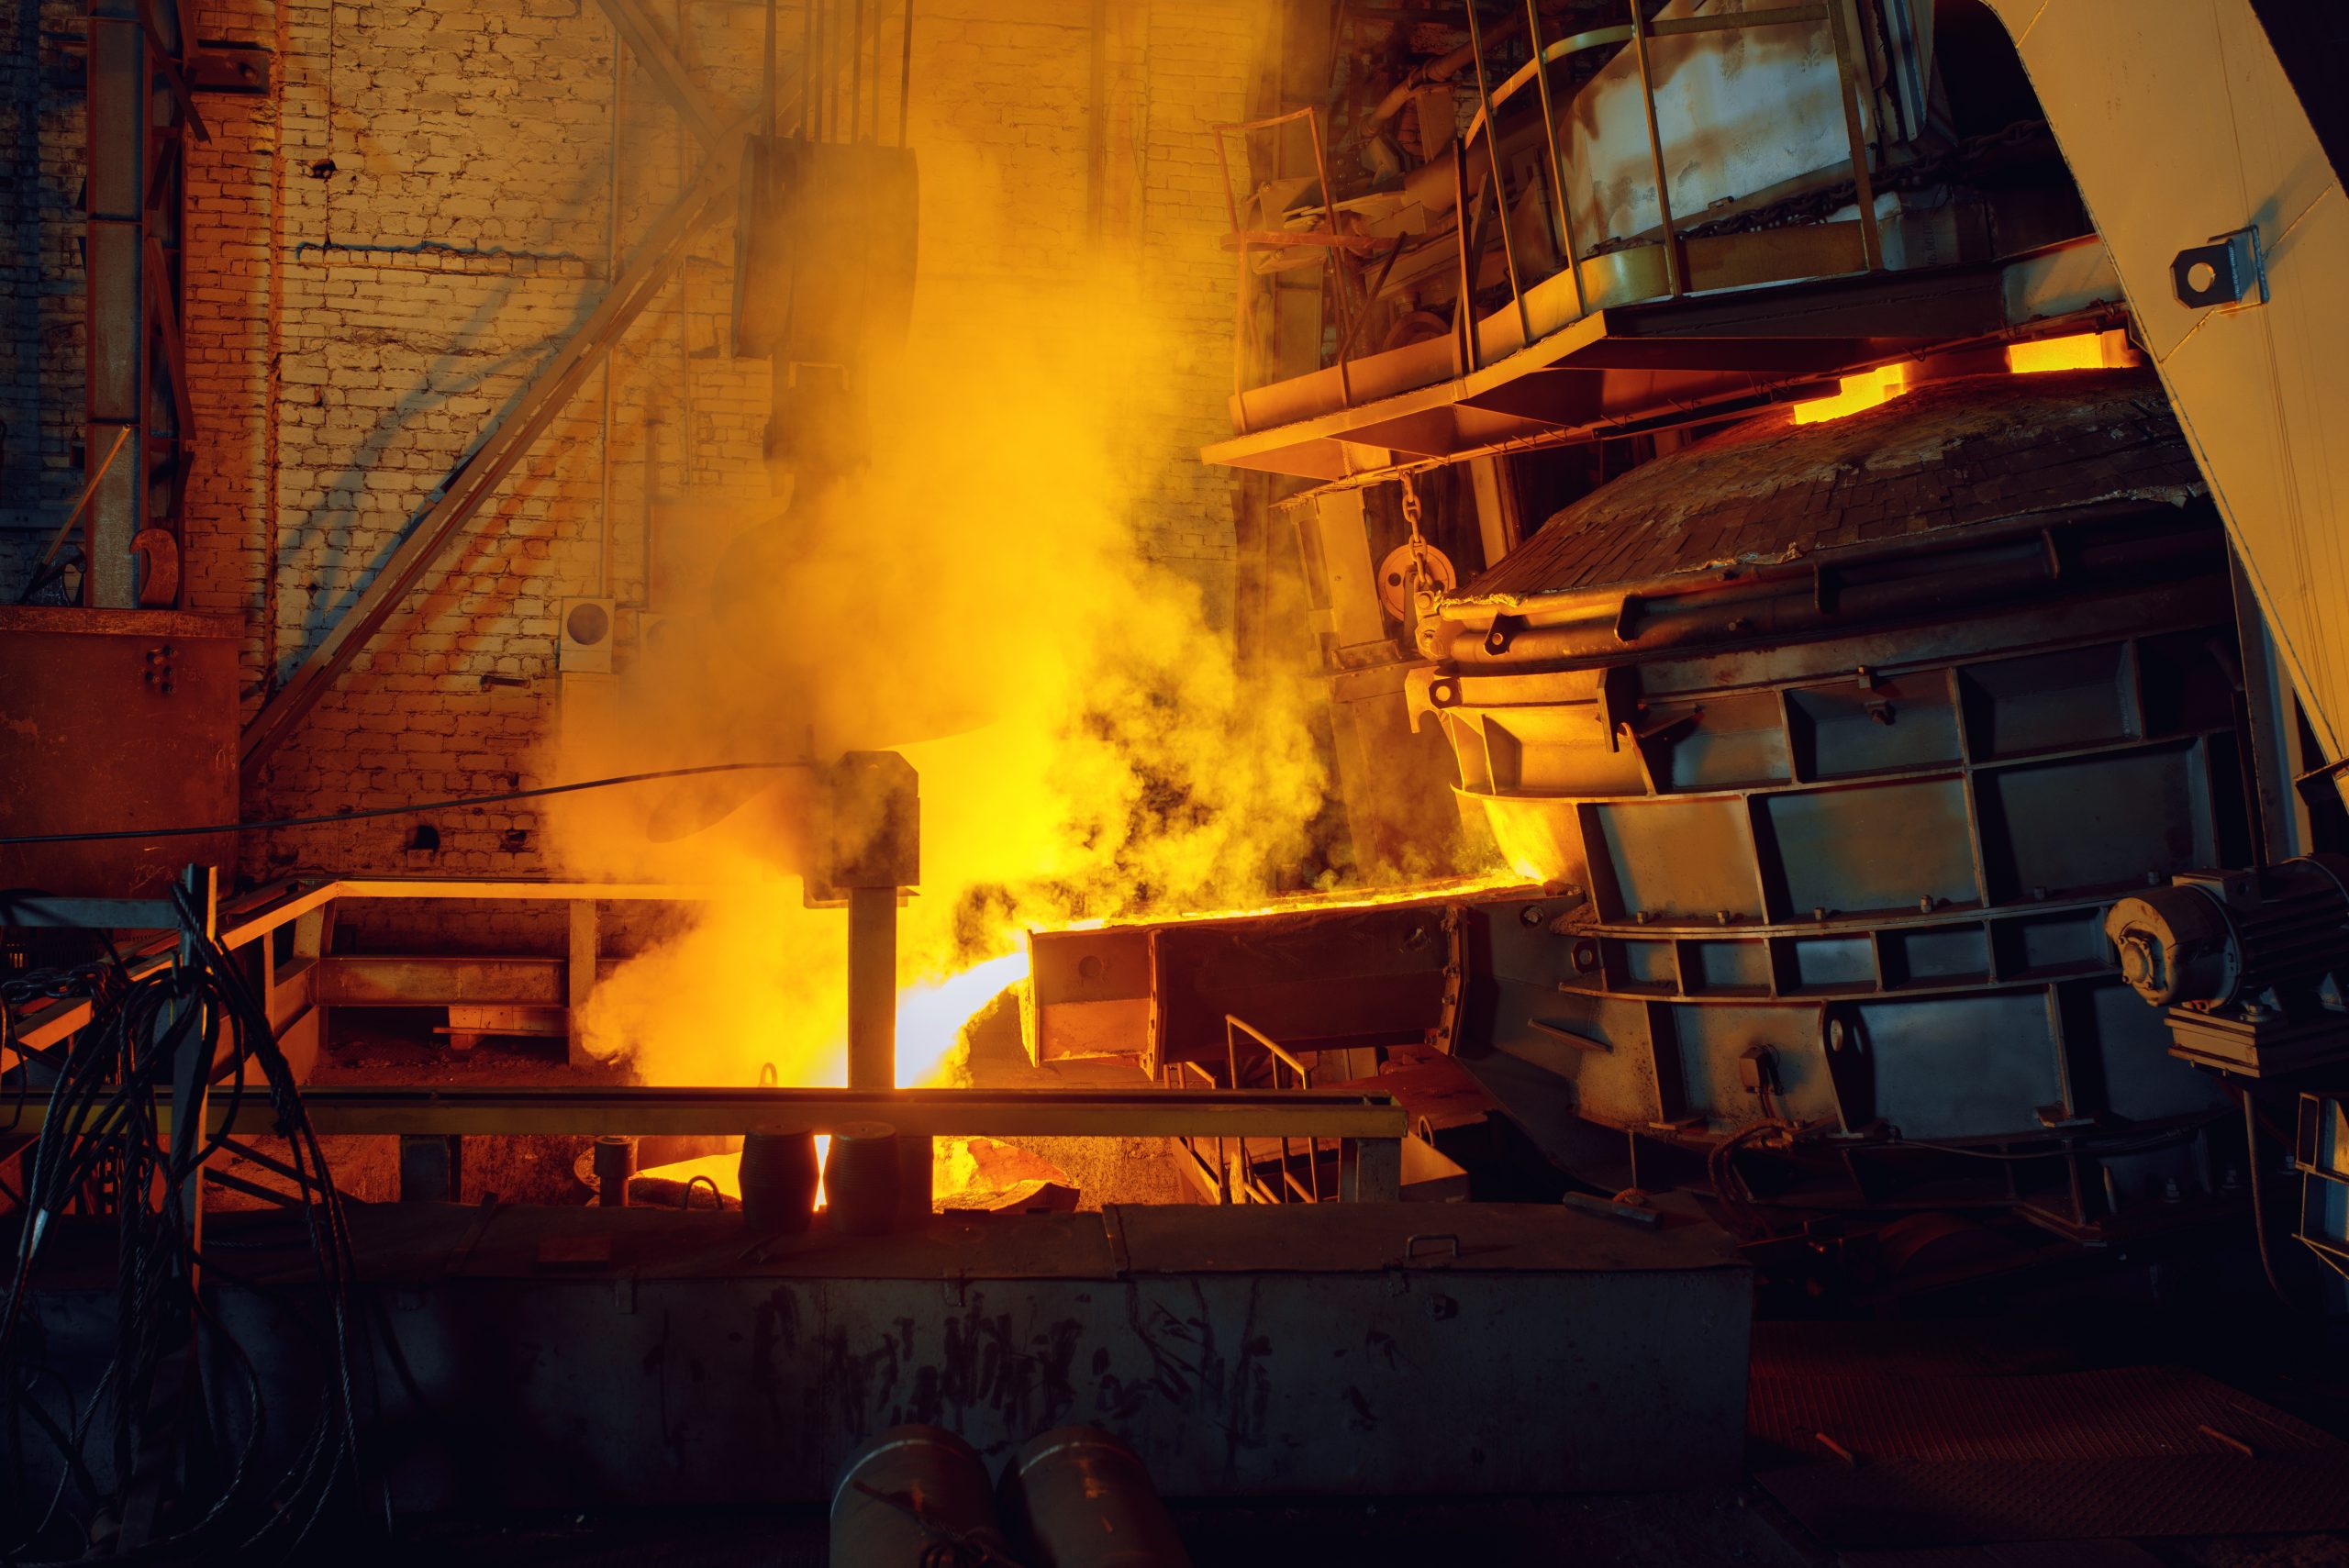 steel-factory-metallurgical-or-metalworking